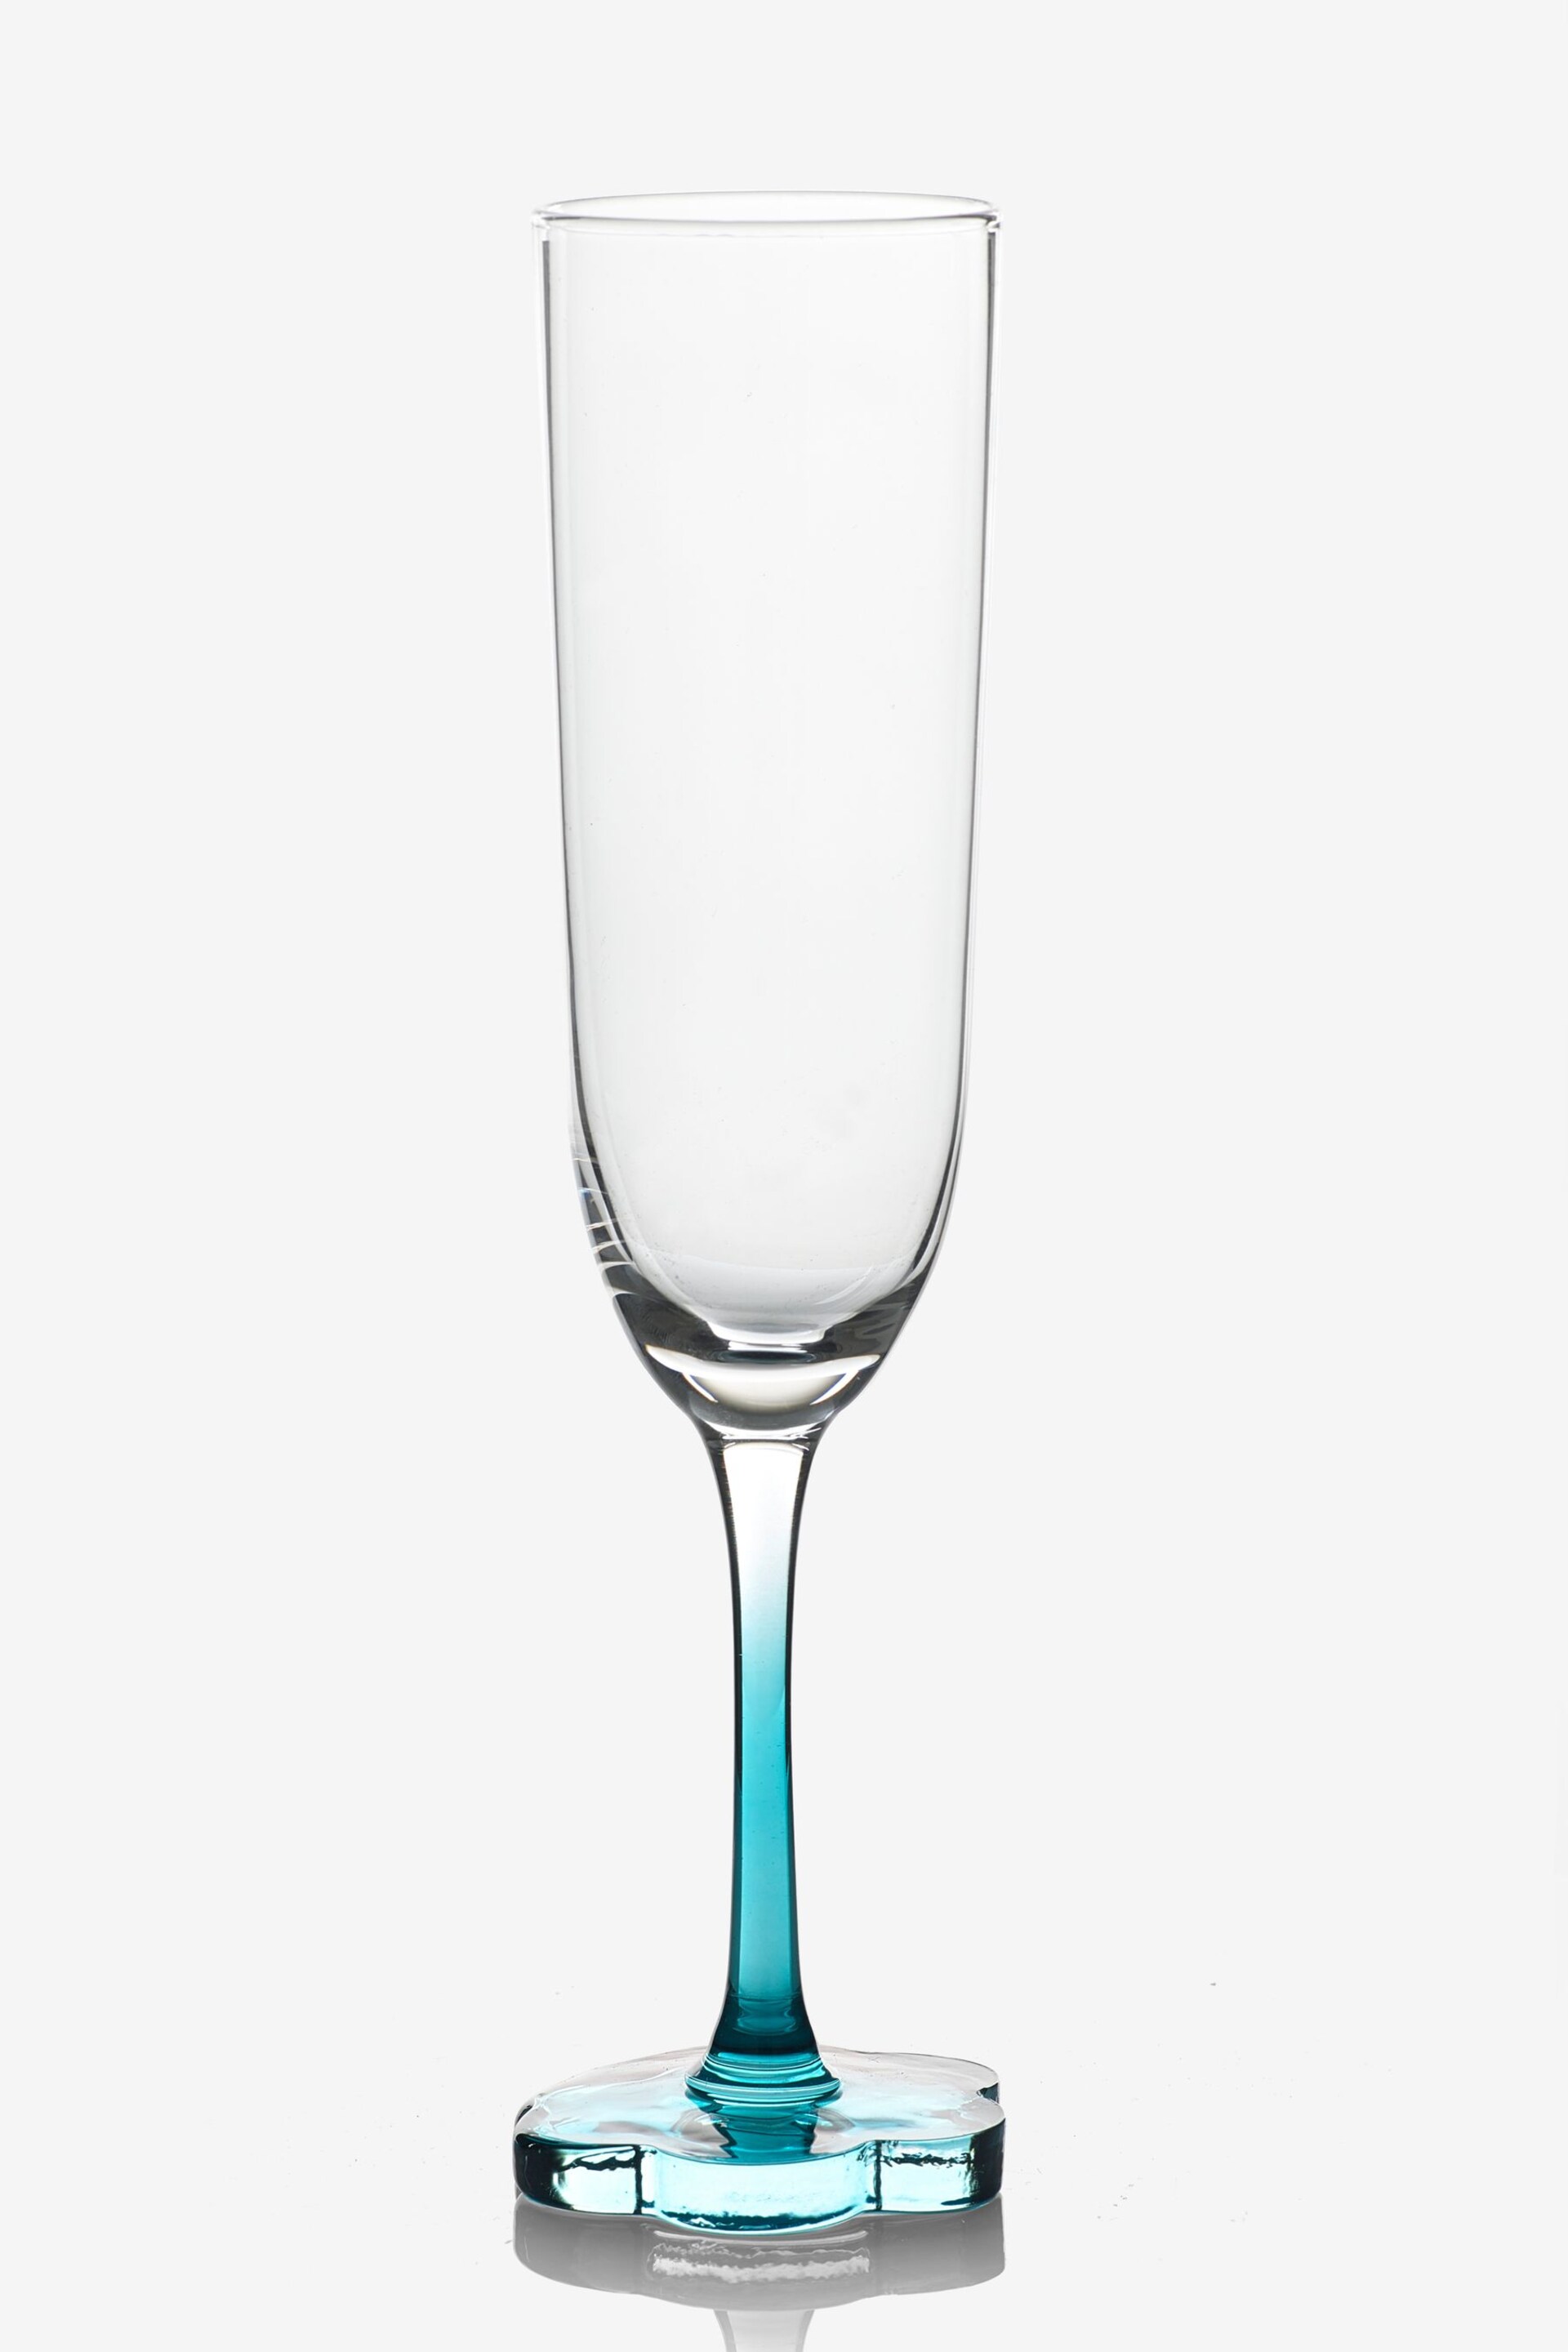 Set of 2 Teal Blue Flower Base Champagne Flutes - Image 5 of 5